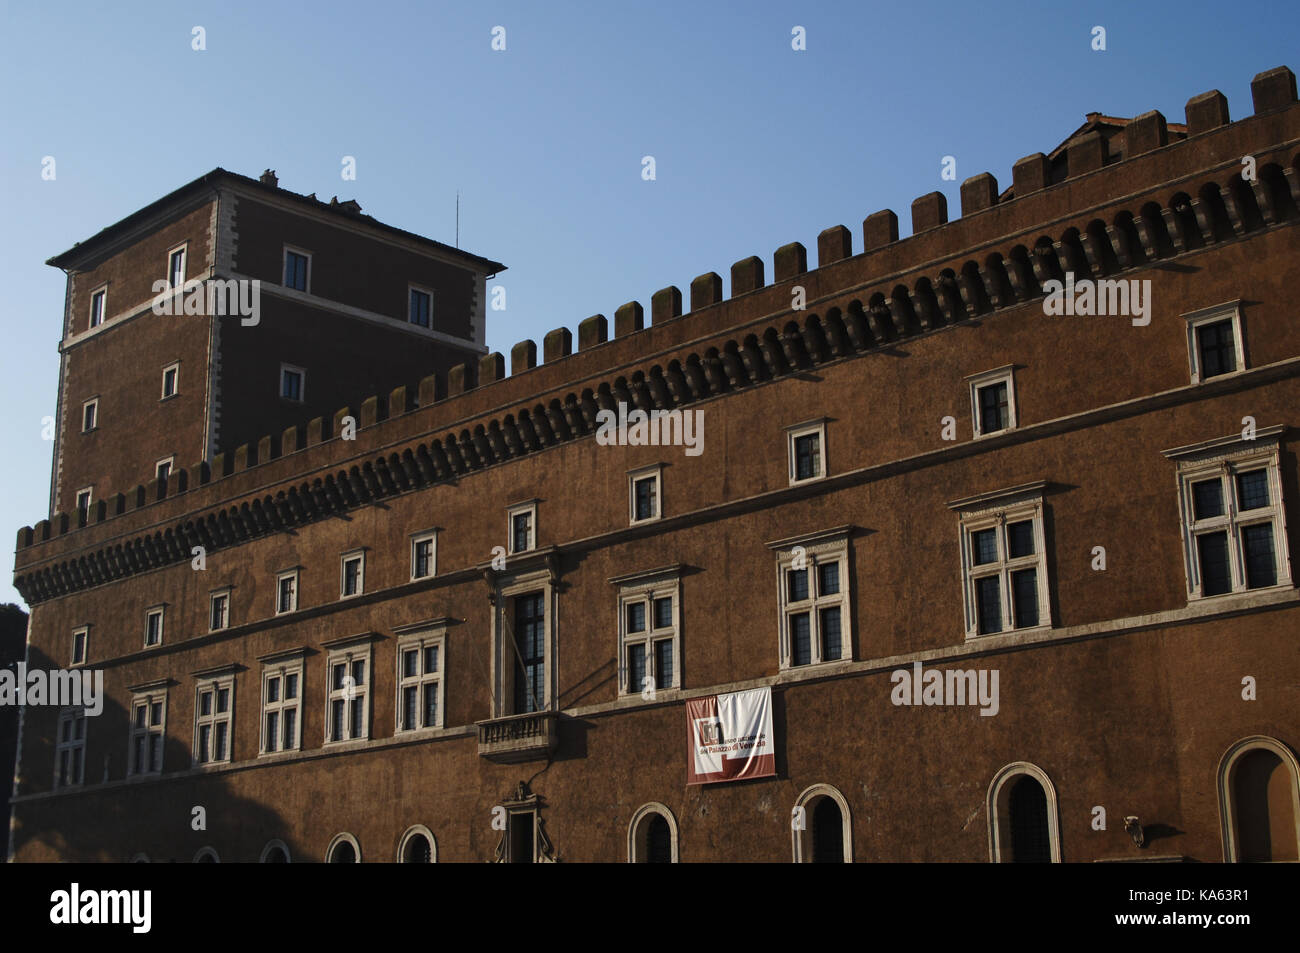 Italy. Rome. Palace of St. Mark or Palace of Venezia. Renaissance. 15th century. Stock Photo